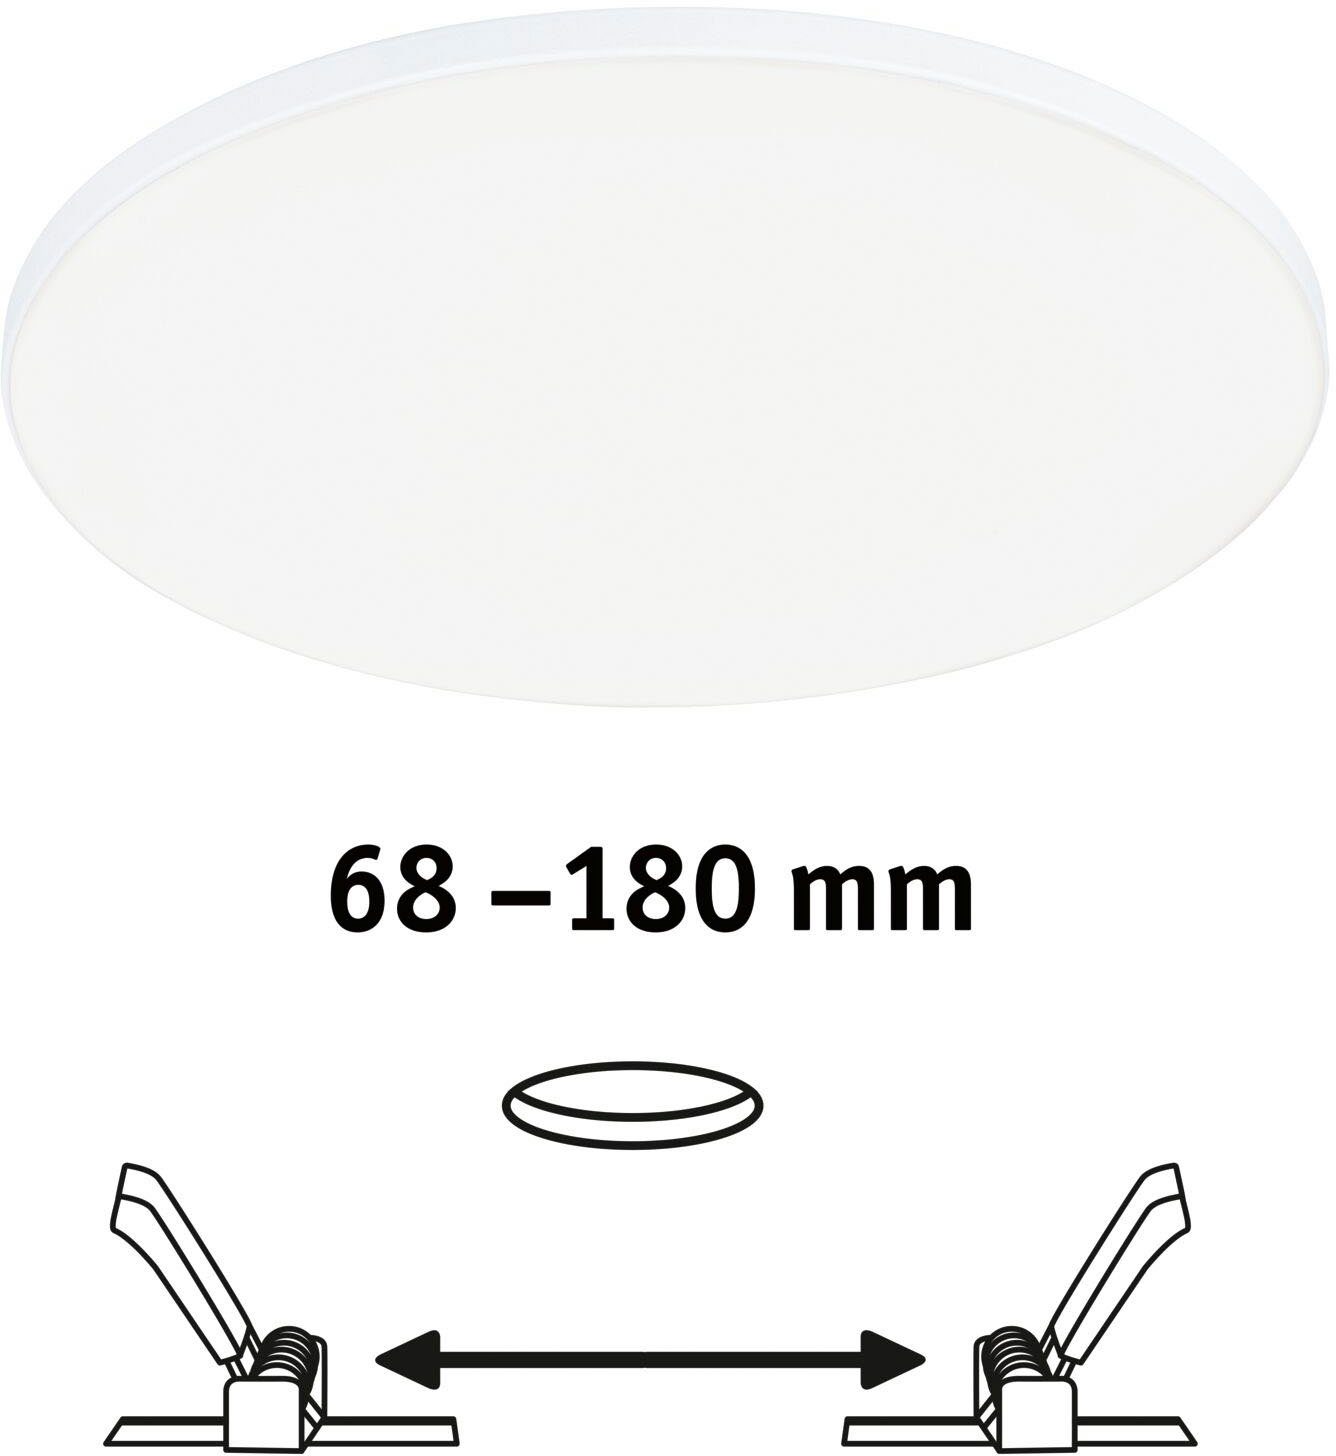 Paulmann LED Einbauleuchte Veluna VariFit 200mm Weiß dimmbar Einbaupanel LED Neutralweiß, Weiß 1500lm 200mm 4000K IP44 IP44 dimmbar, 1500lm rund rund Edge LED fest integriert, 4000K